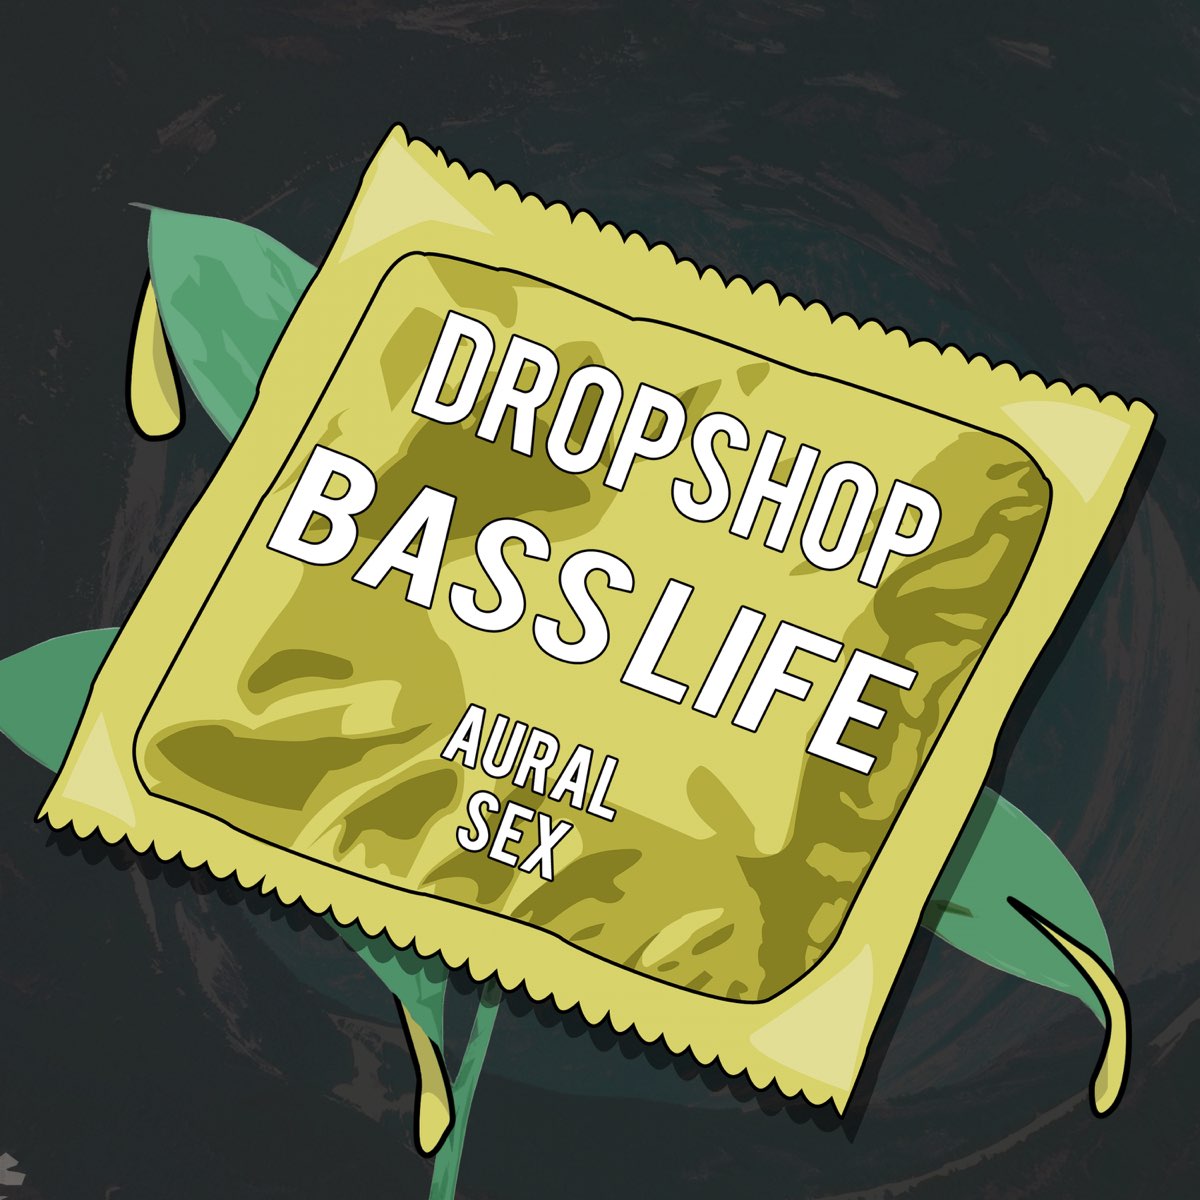 Dropshop. Dropshop logo.